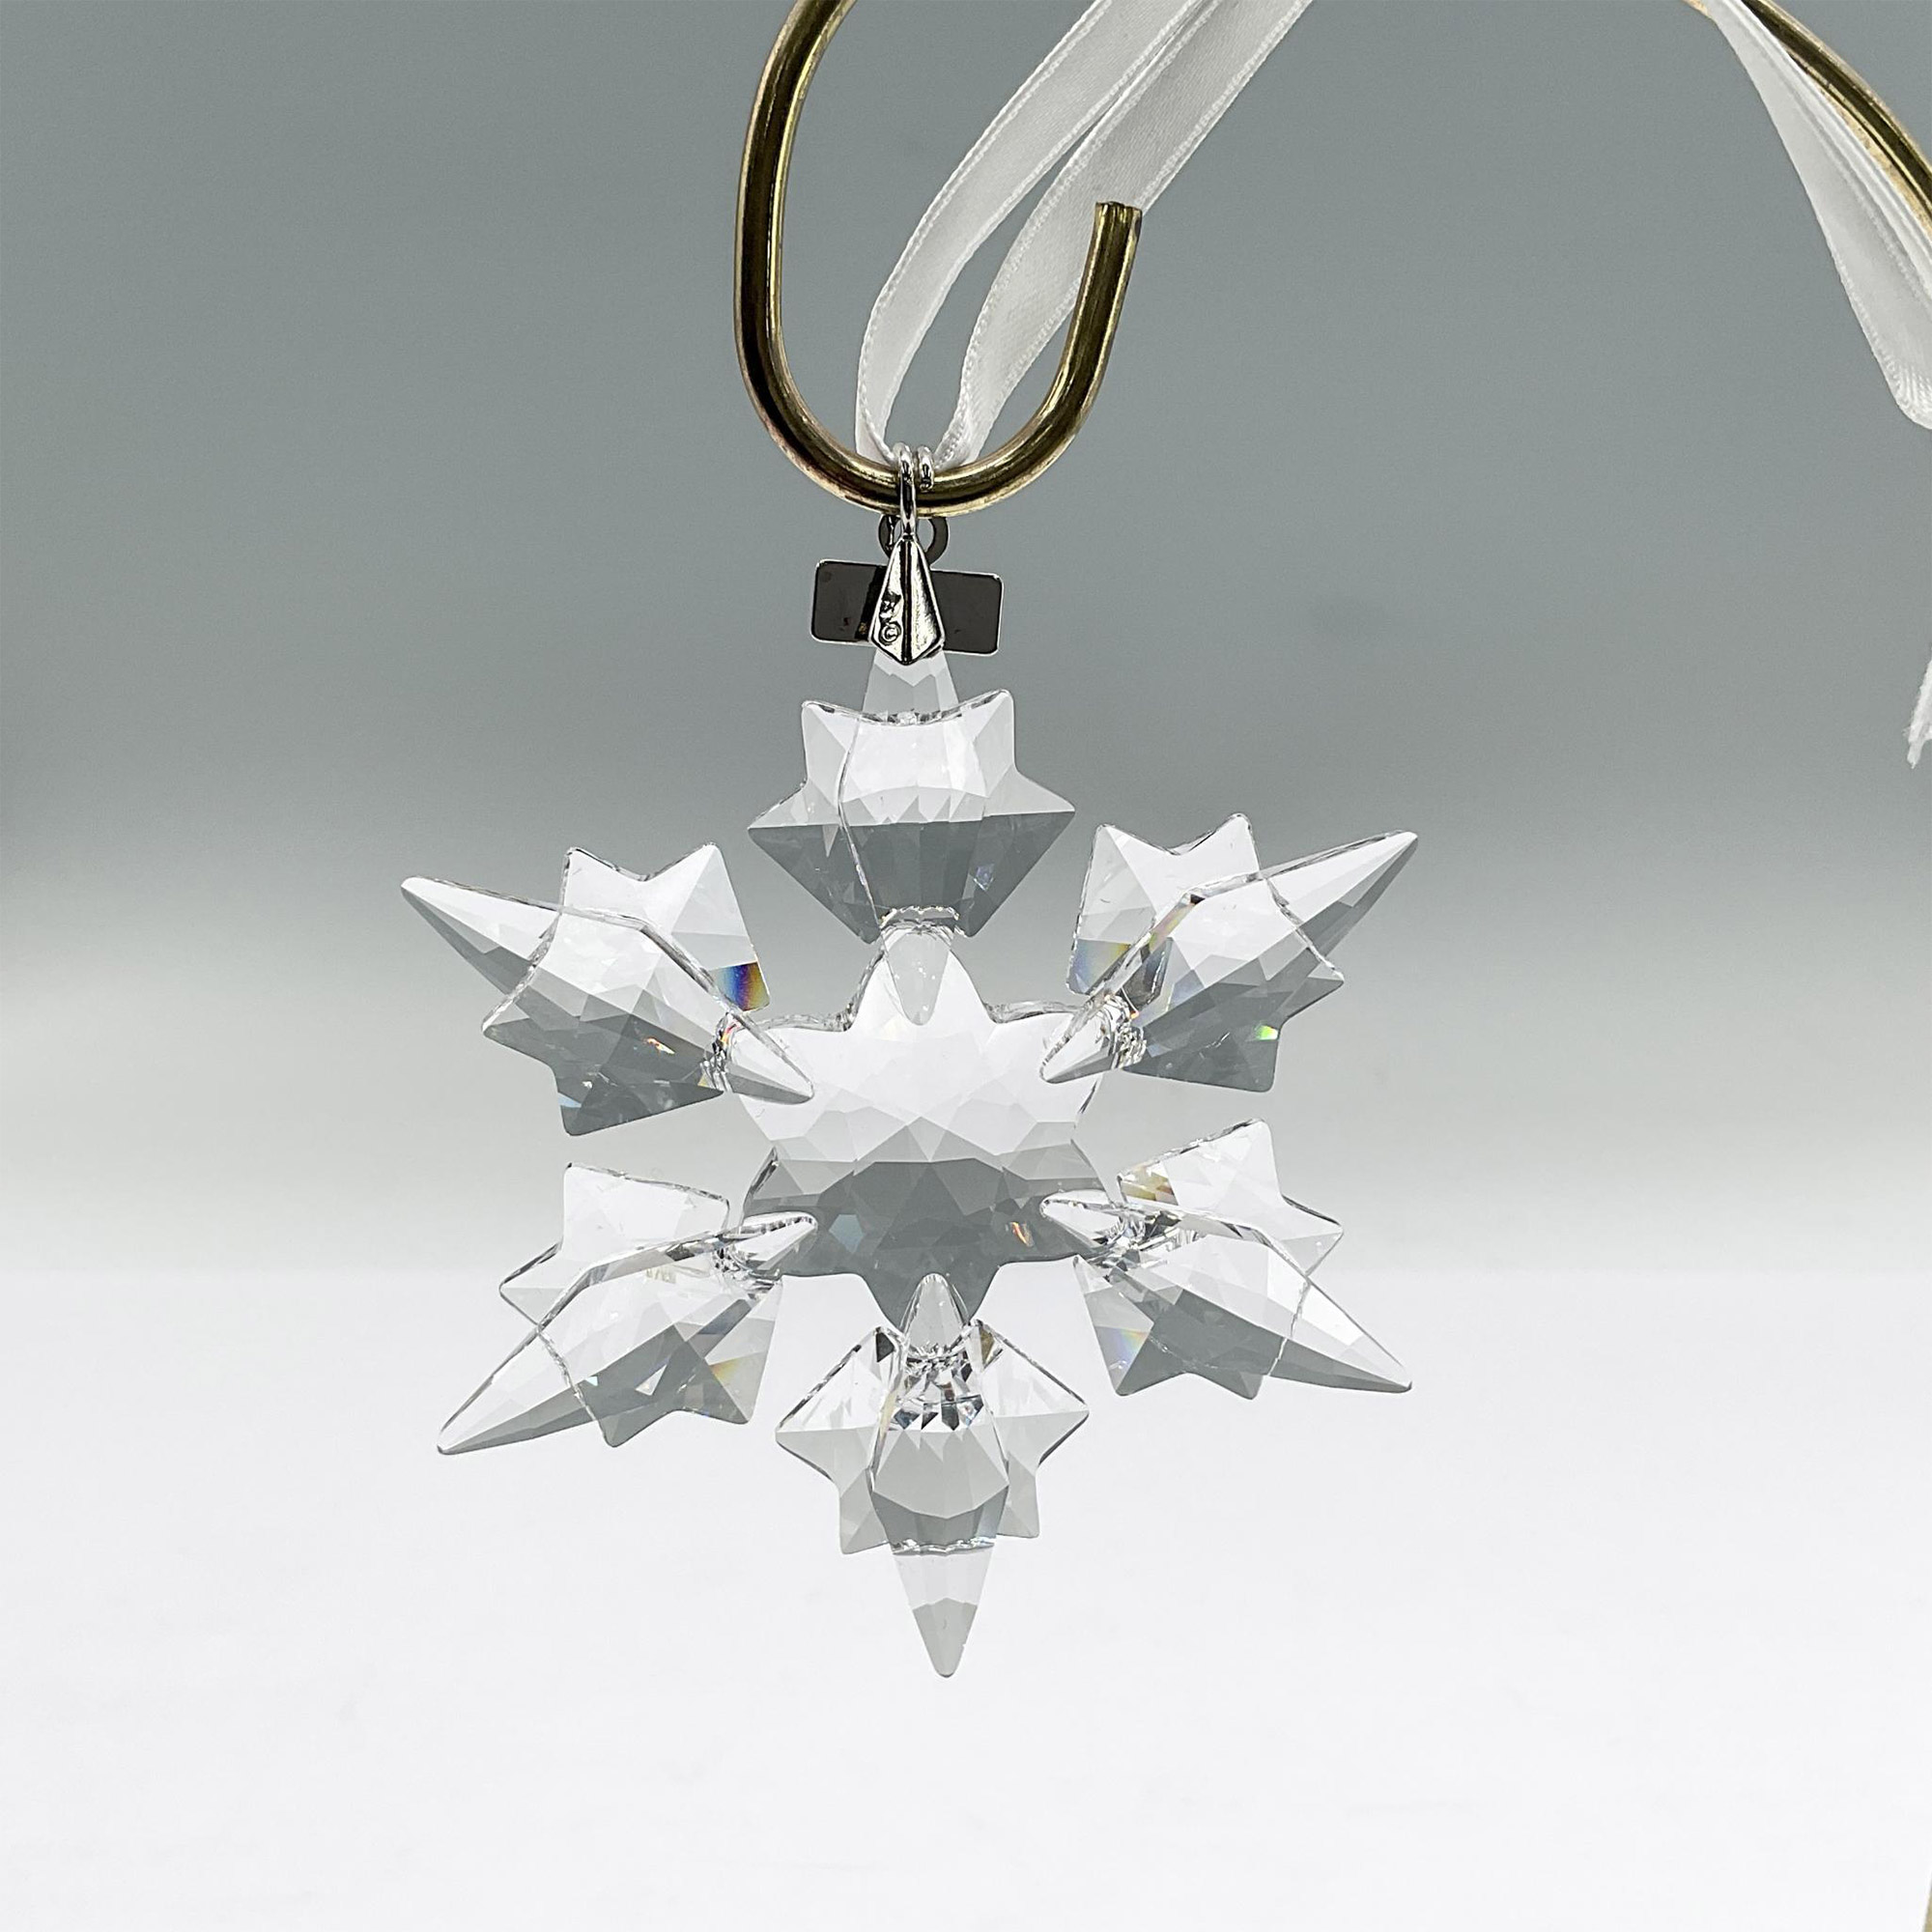 Swarovski Crystal Christmas Ornament 2010 - Image 2 of 3